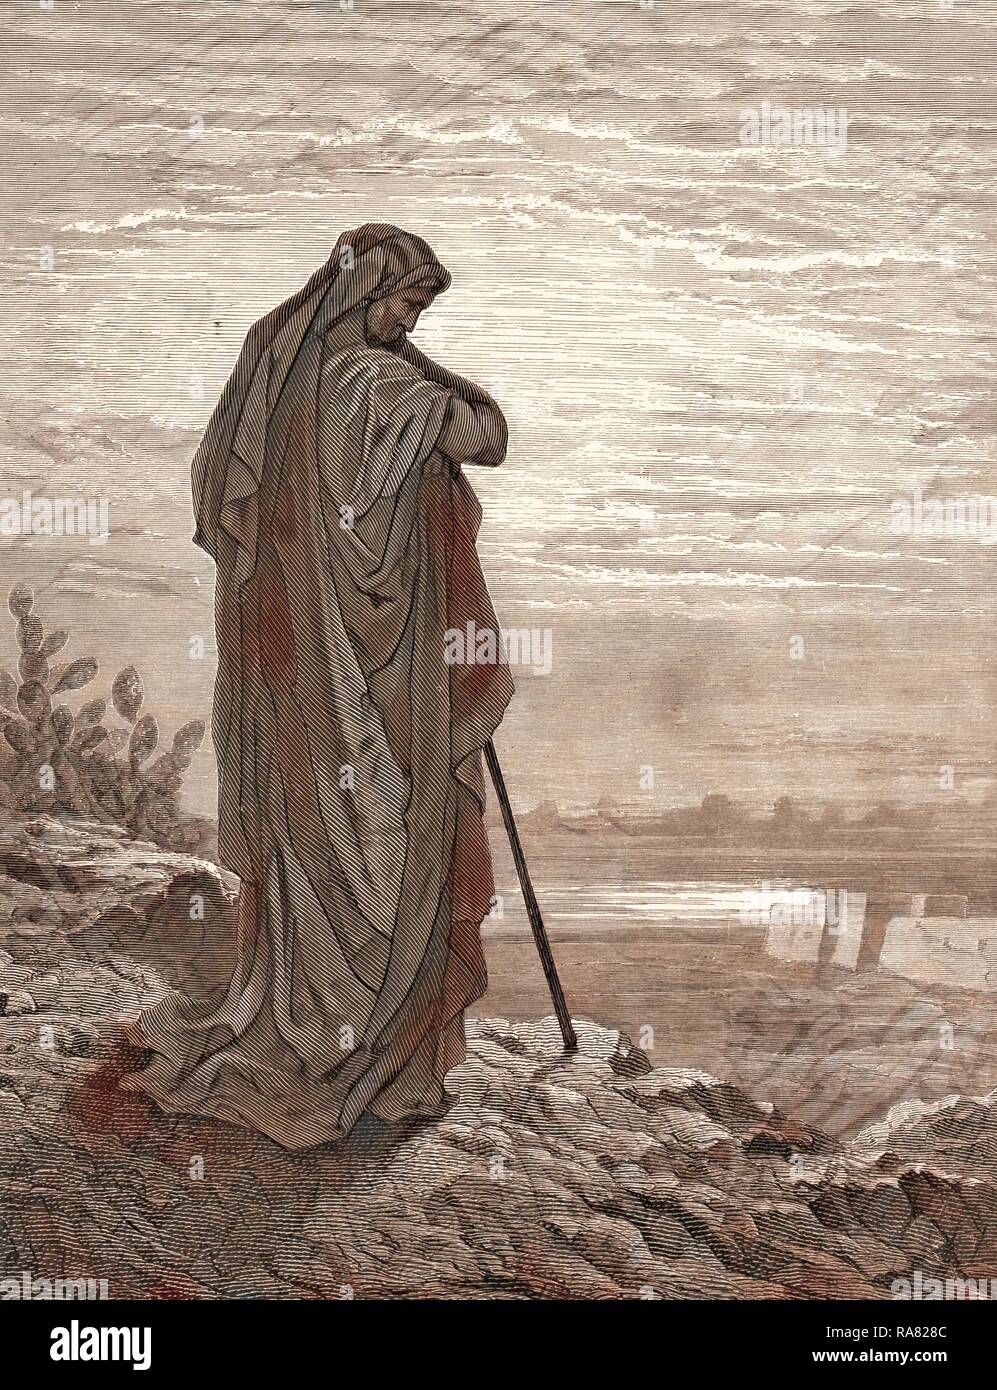 Amos il profeta, da Gustave Doré, 1832 - 1883, francese. Incisione per la Bibbia. 1870, arte, artista, Libro Sacro reinventato Foto Stock